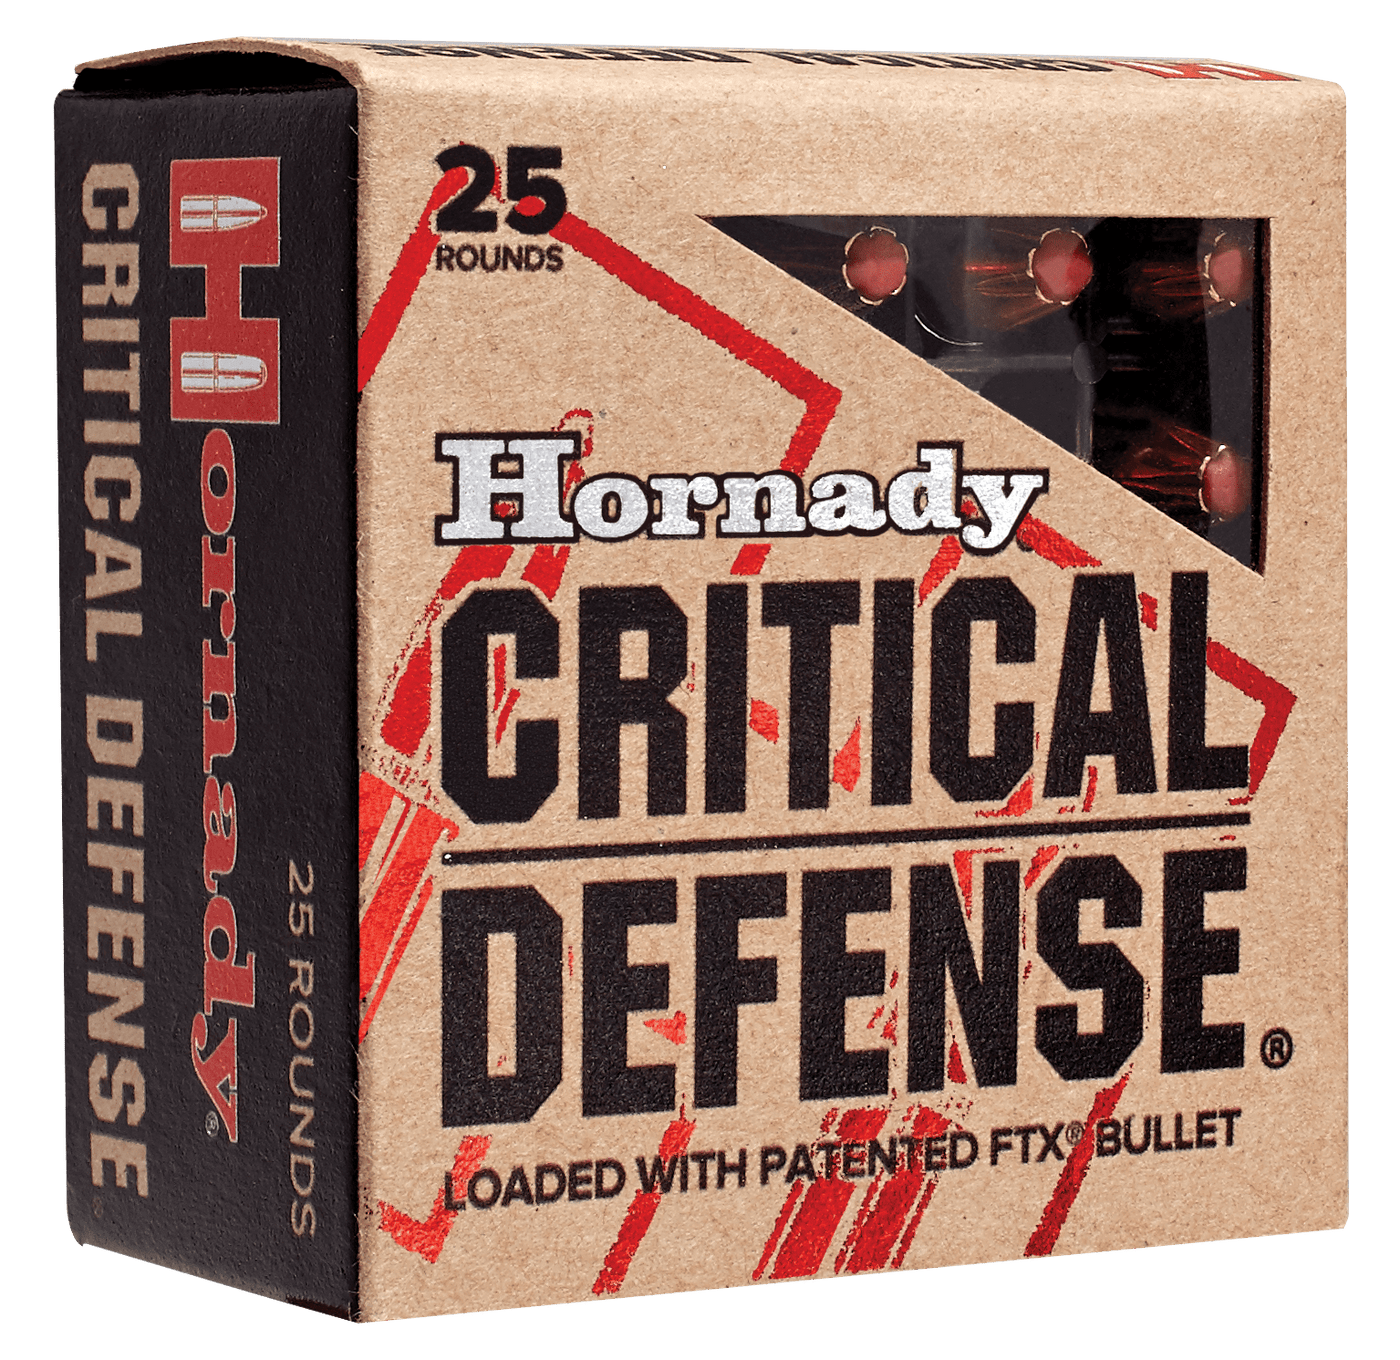 Hornady Hornady Critical Defense Pistol Ammo 45 Acp 185 Gr. Flex Tip Expanding 20 Rd. Ammo